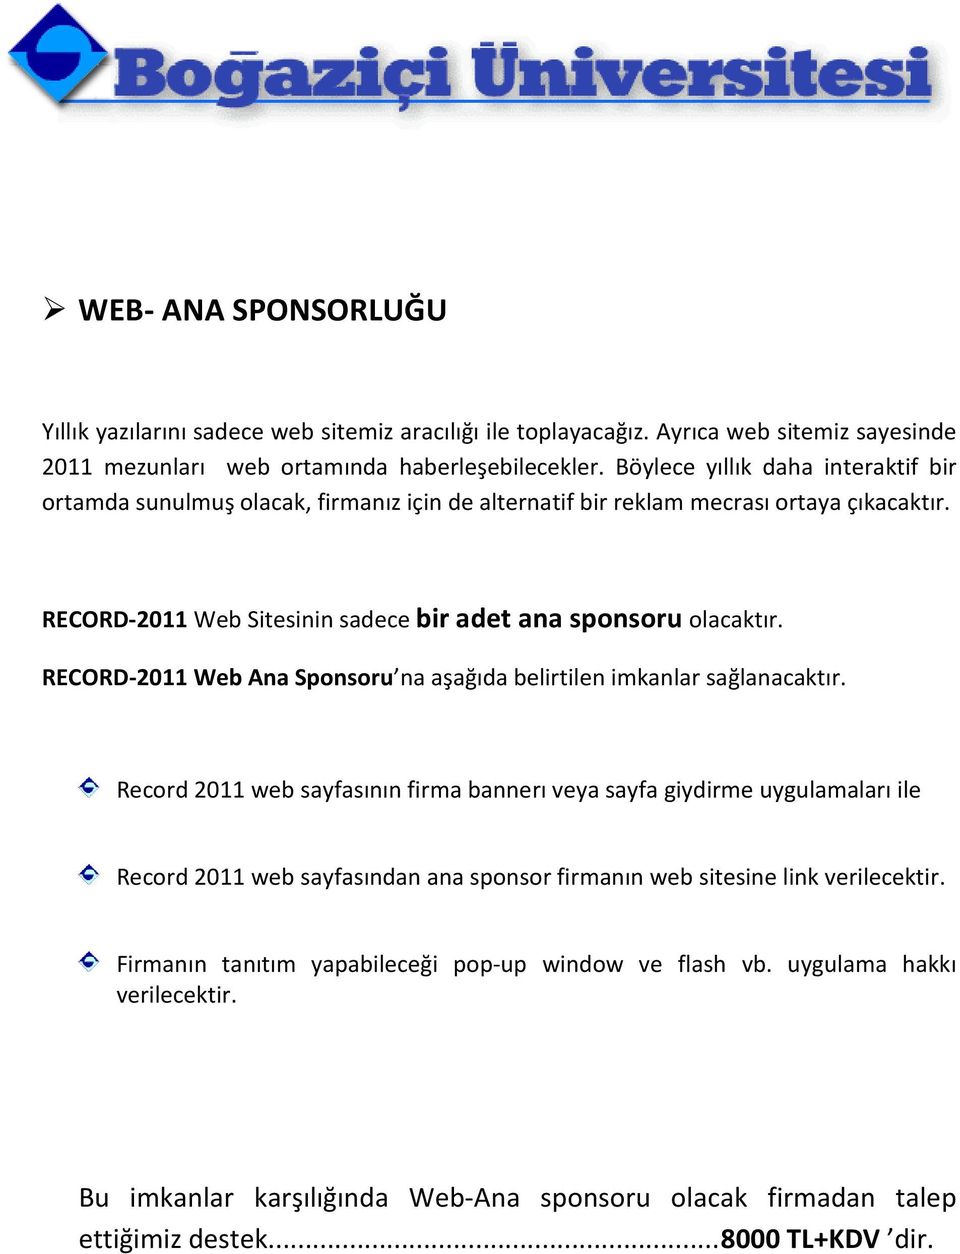 RECORD-2011 Web Ana Sponsoru na aşağıda belirtilen imkanlar sağlanacaktır.